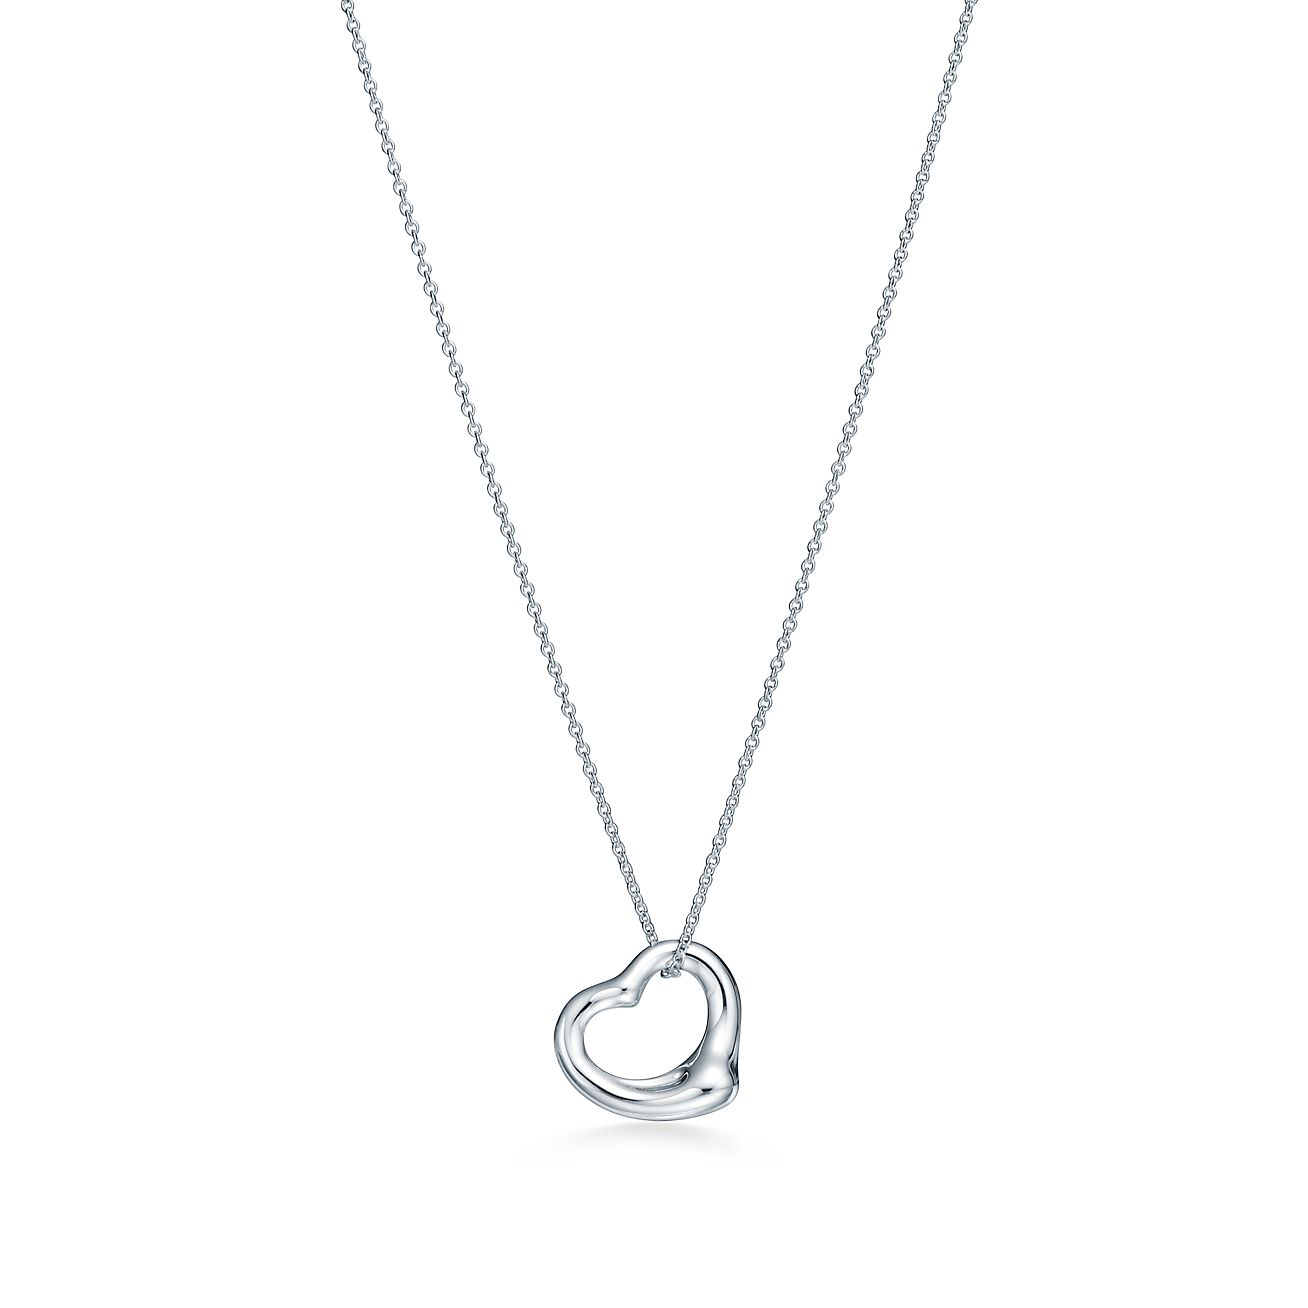 elsa peretti open heart pendant